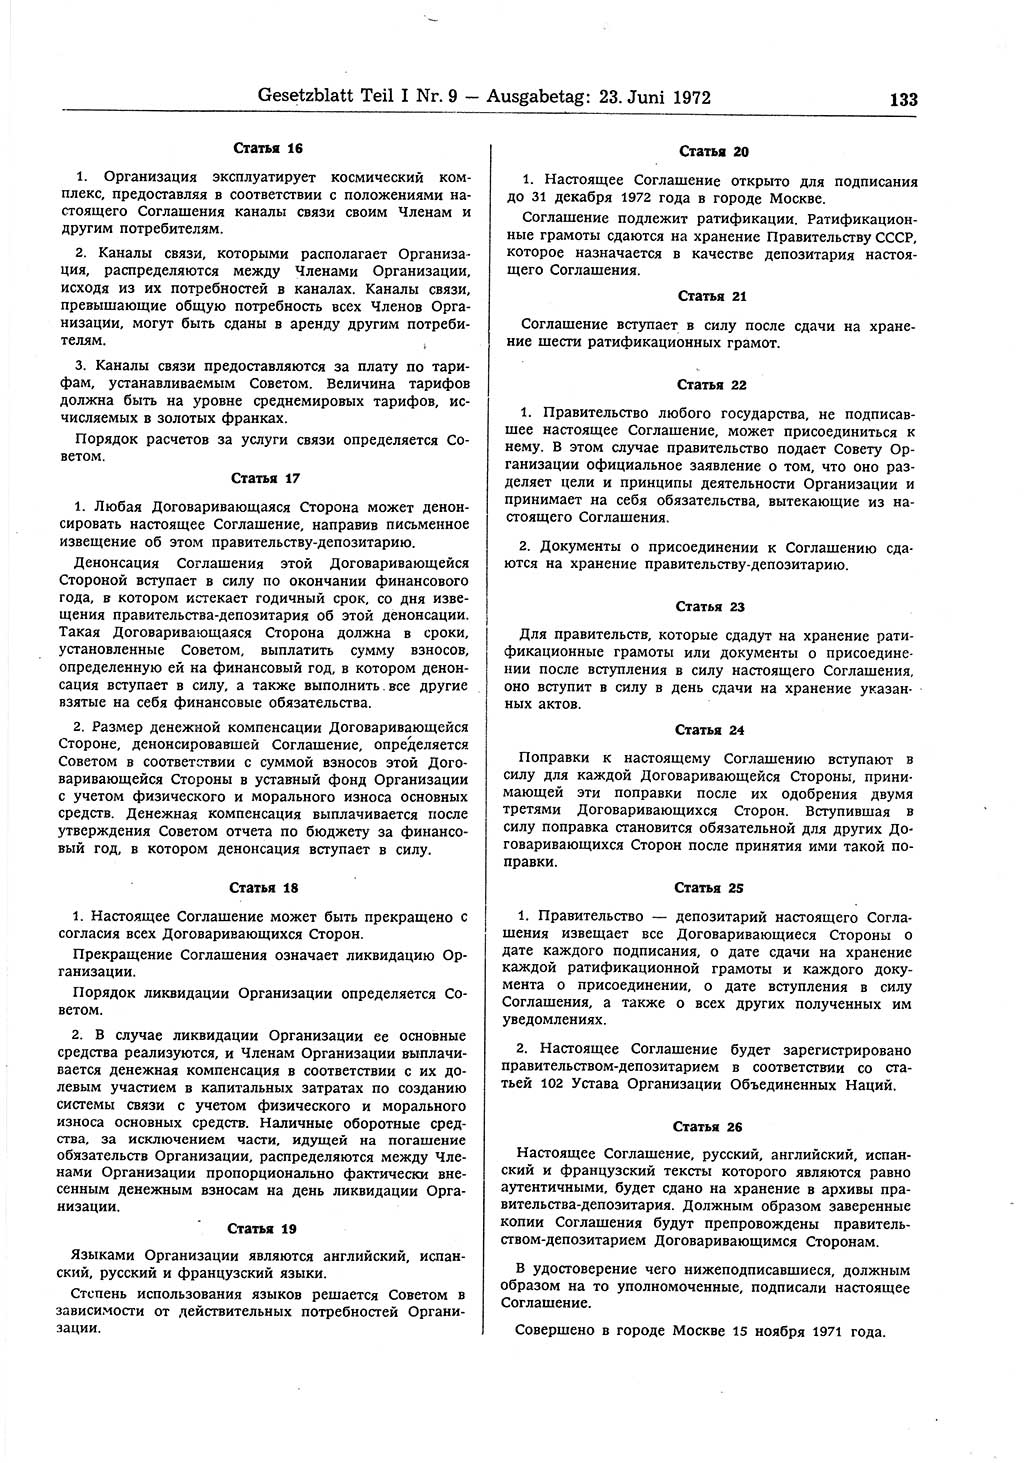 Gesetzblatt (GBl.) der Deutschen Demokratischen Republik (DDR) Teil Ⅰ 1972, Seite 133 (GBl. DDR Ⅰ 1972, S. 133)